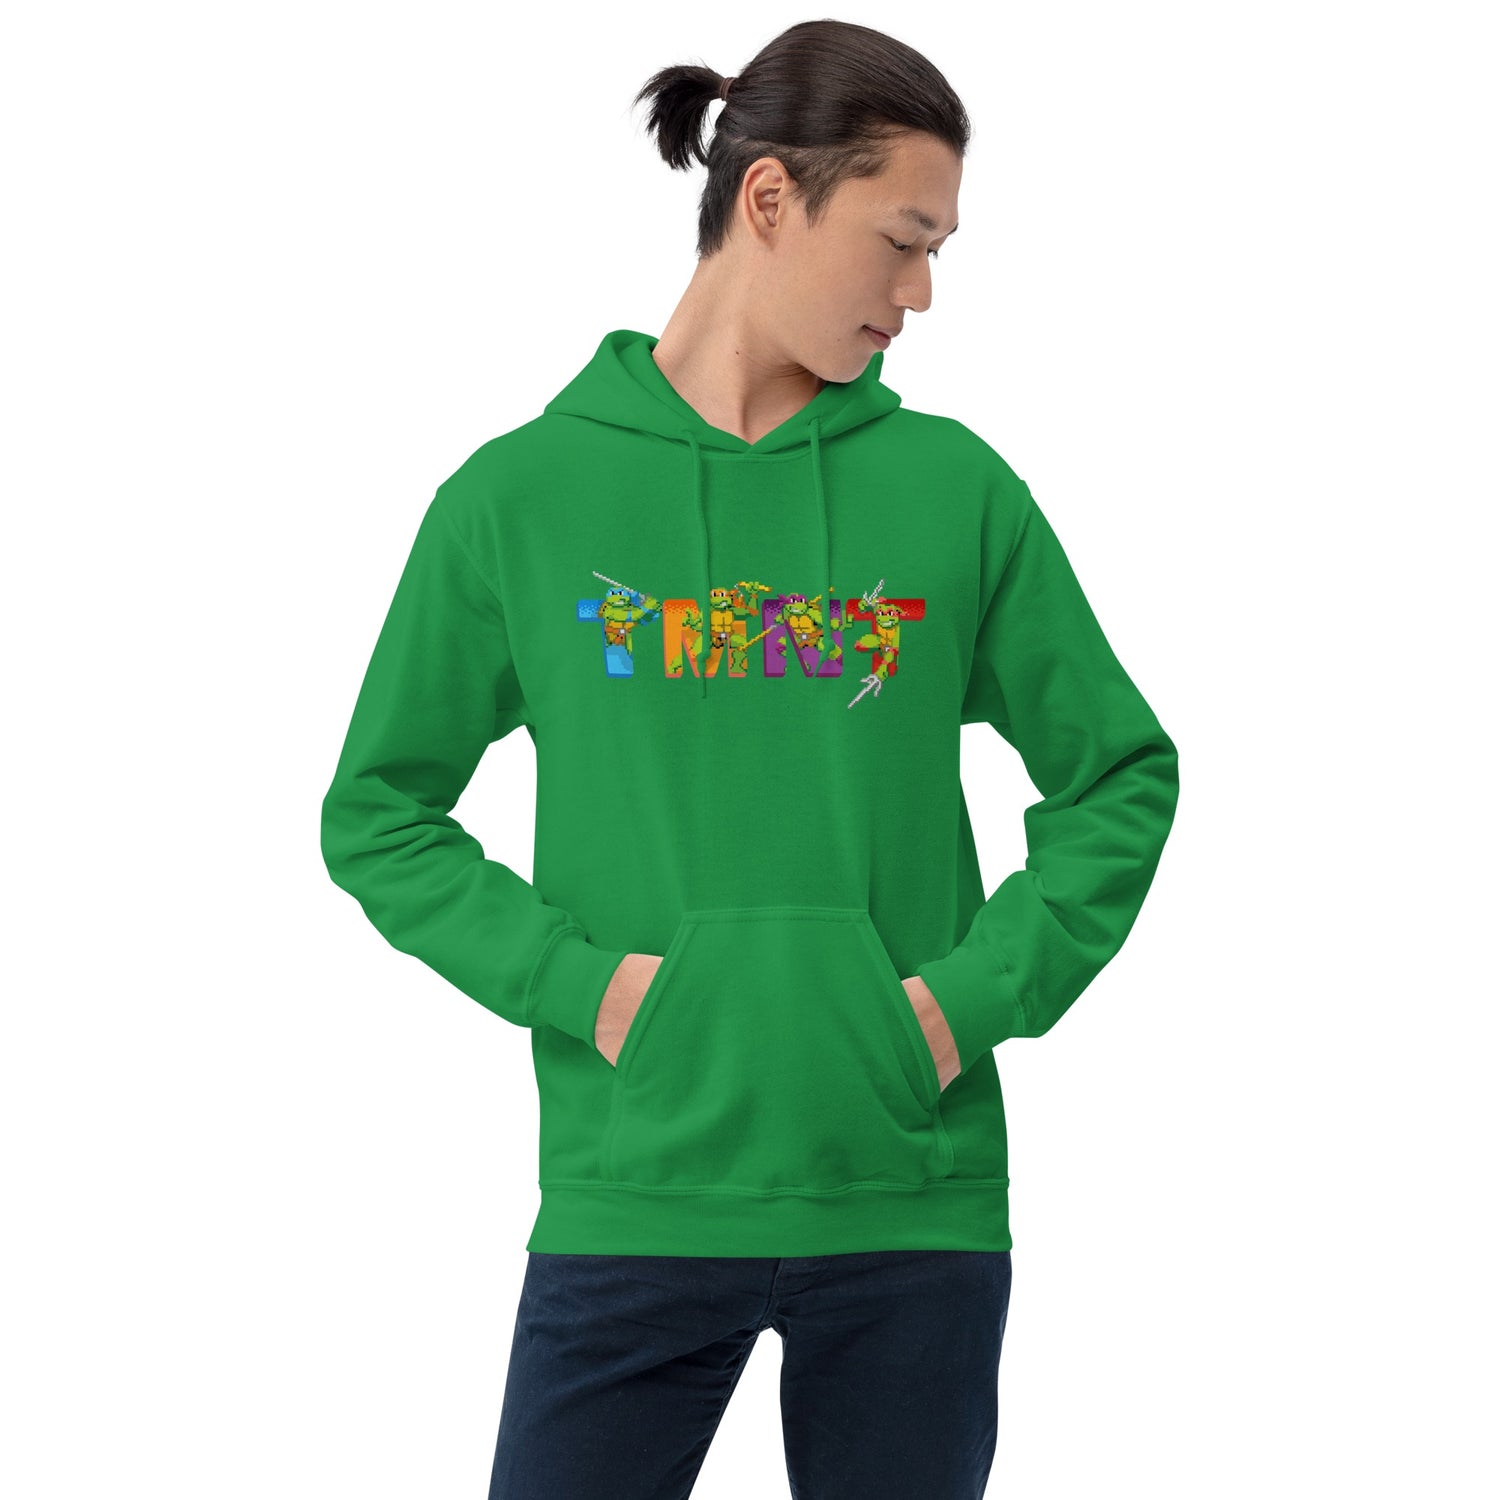 Teenage Mutant Ninja Turtles TMNT Arcade Hooded Sweatshirt